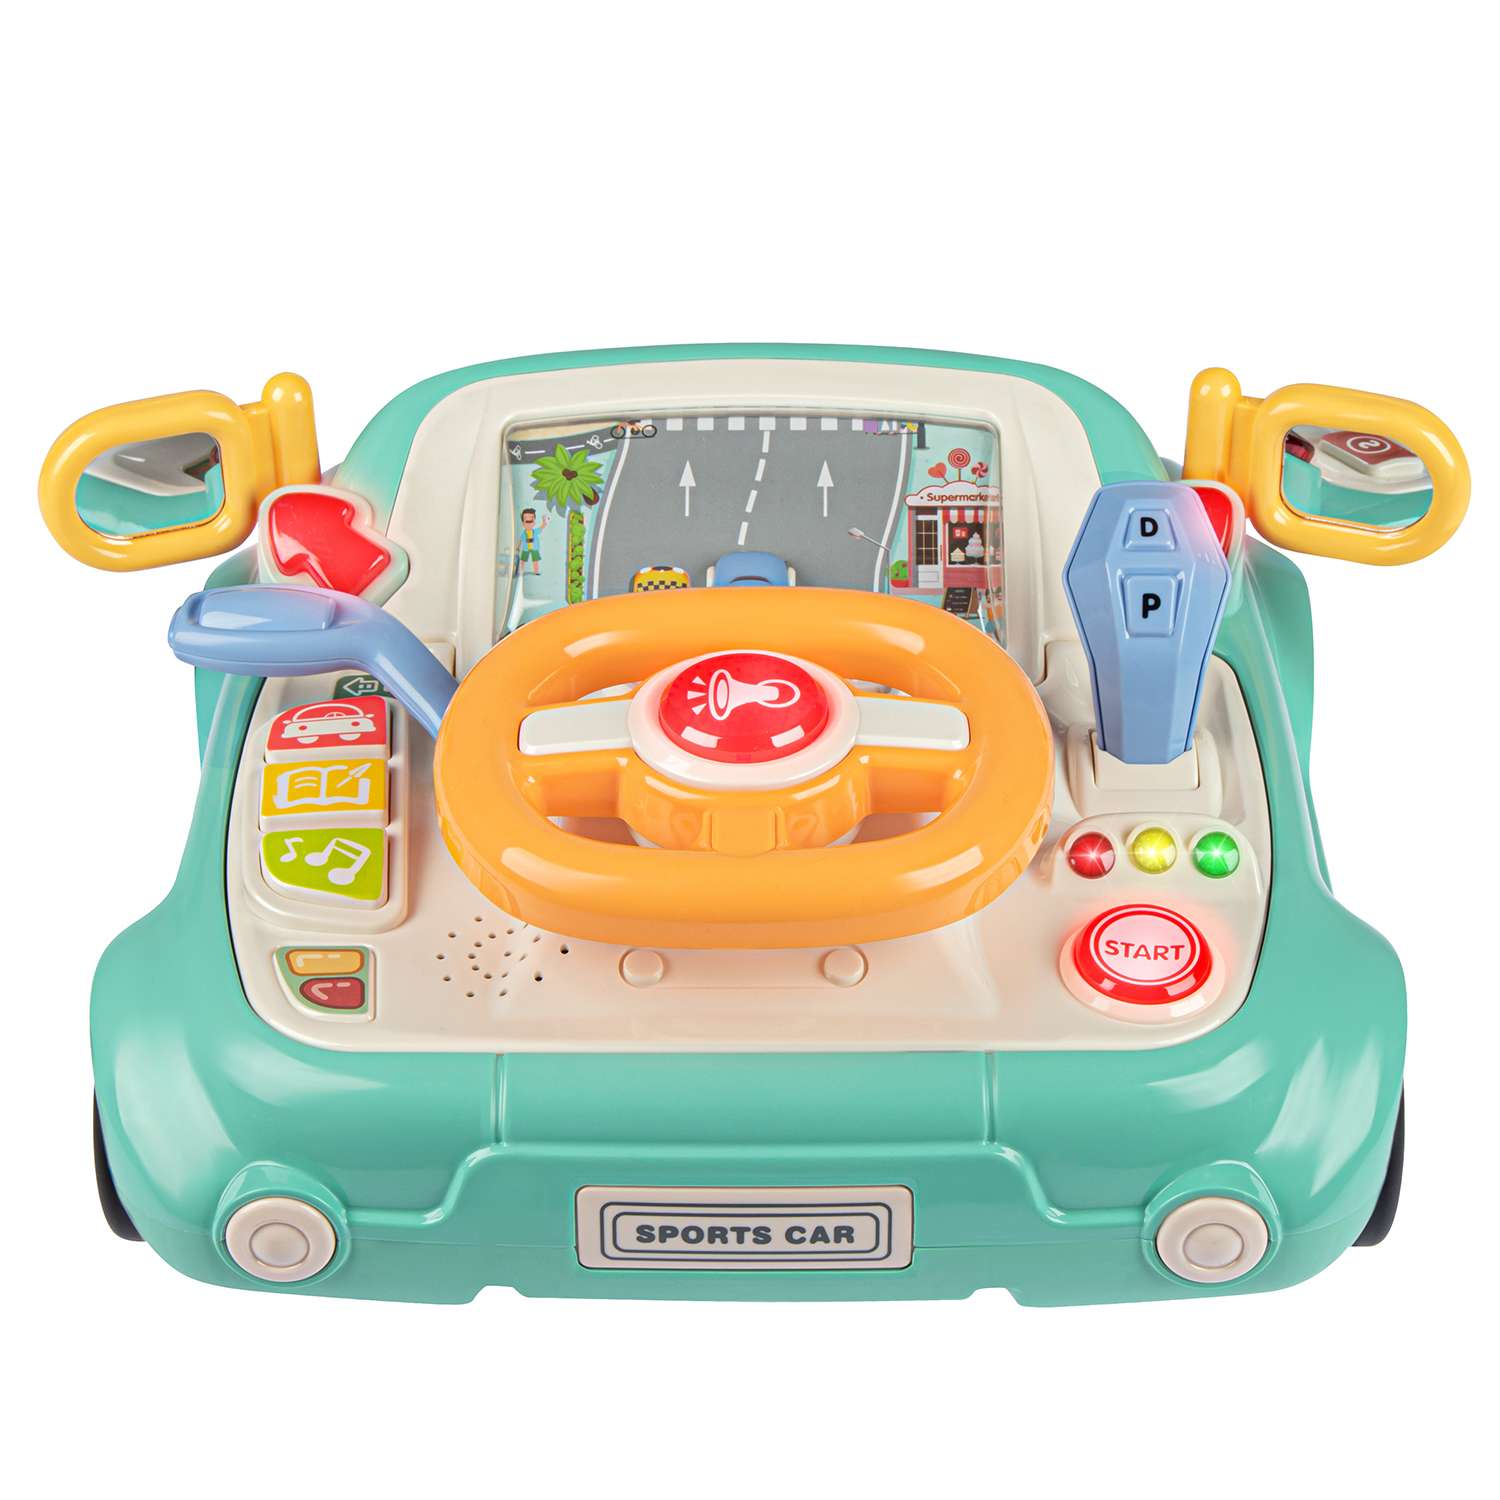 Развивающая игрушка Smart Baby Игровой обучающий центр музыкальный JB0334085 - фото 10